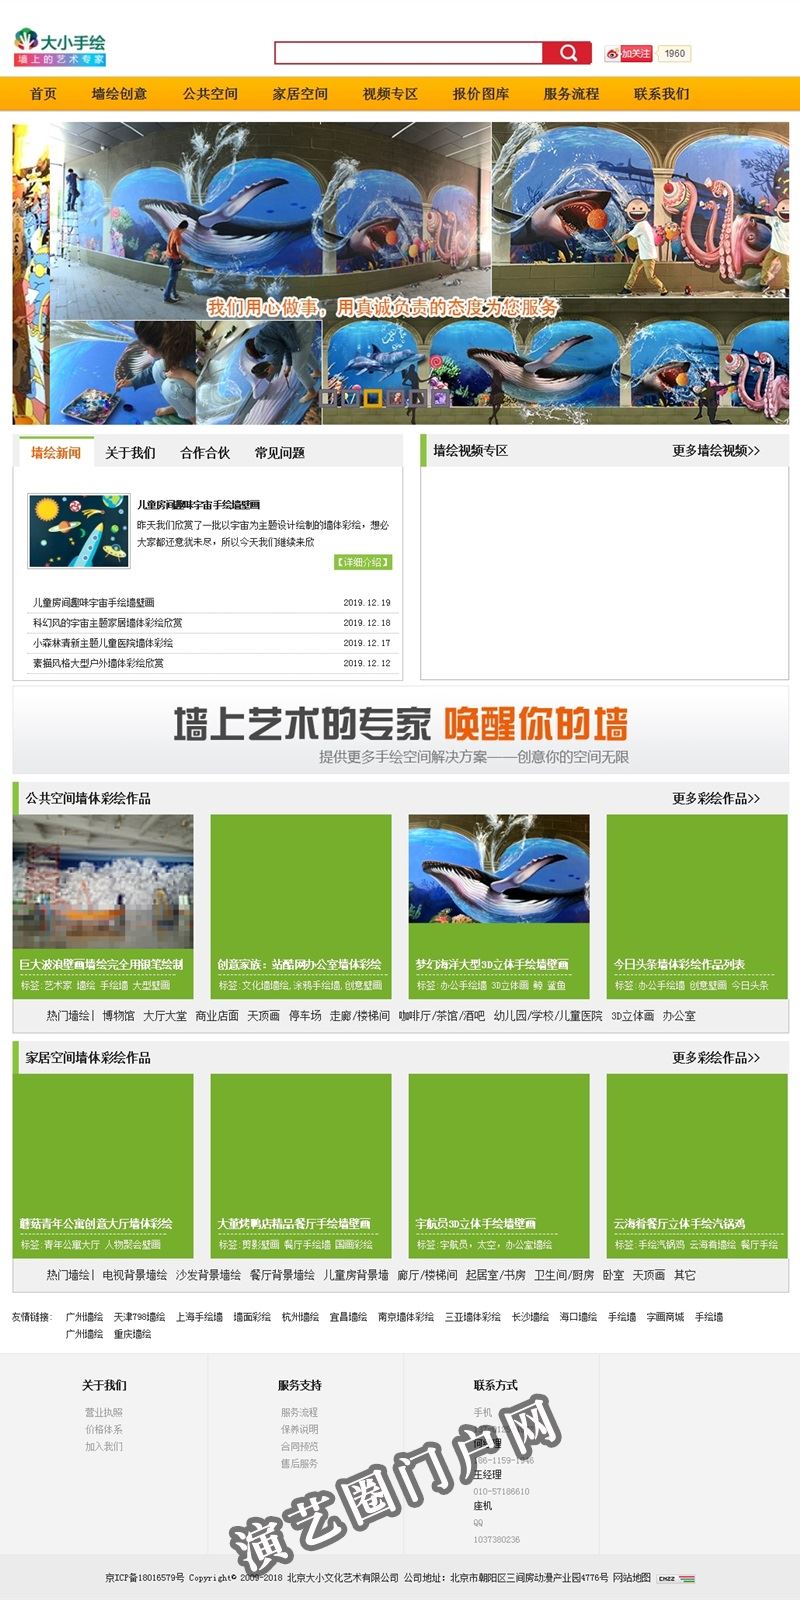 [大小手绘]北京大小文化艺术有限公司-【专注高端创意商业墙绘】截图